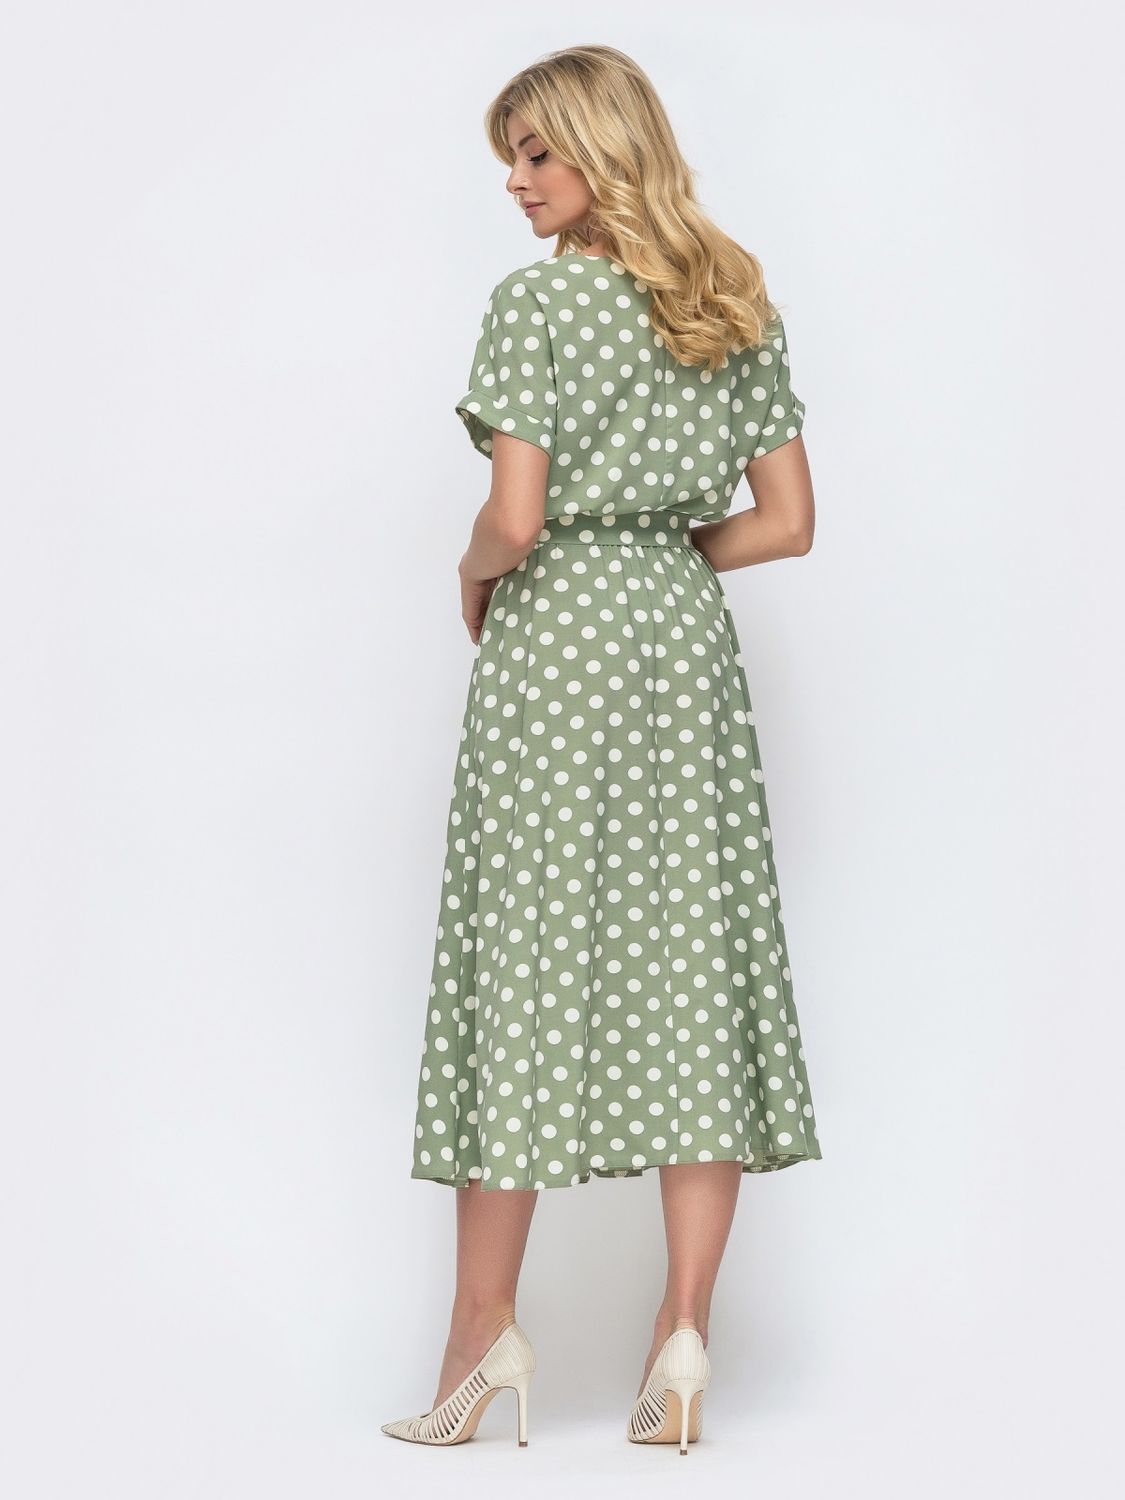 Літня сукня в горошок зі спідницею-сонце оливкова - фото